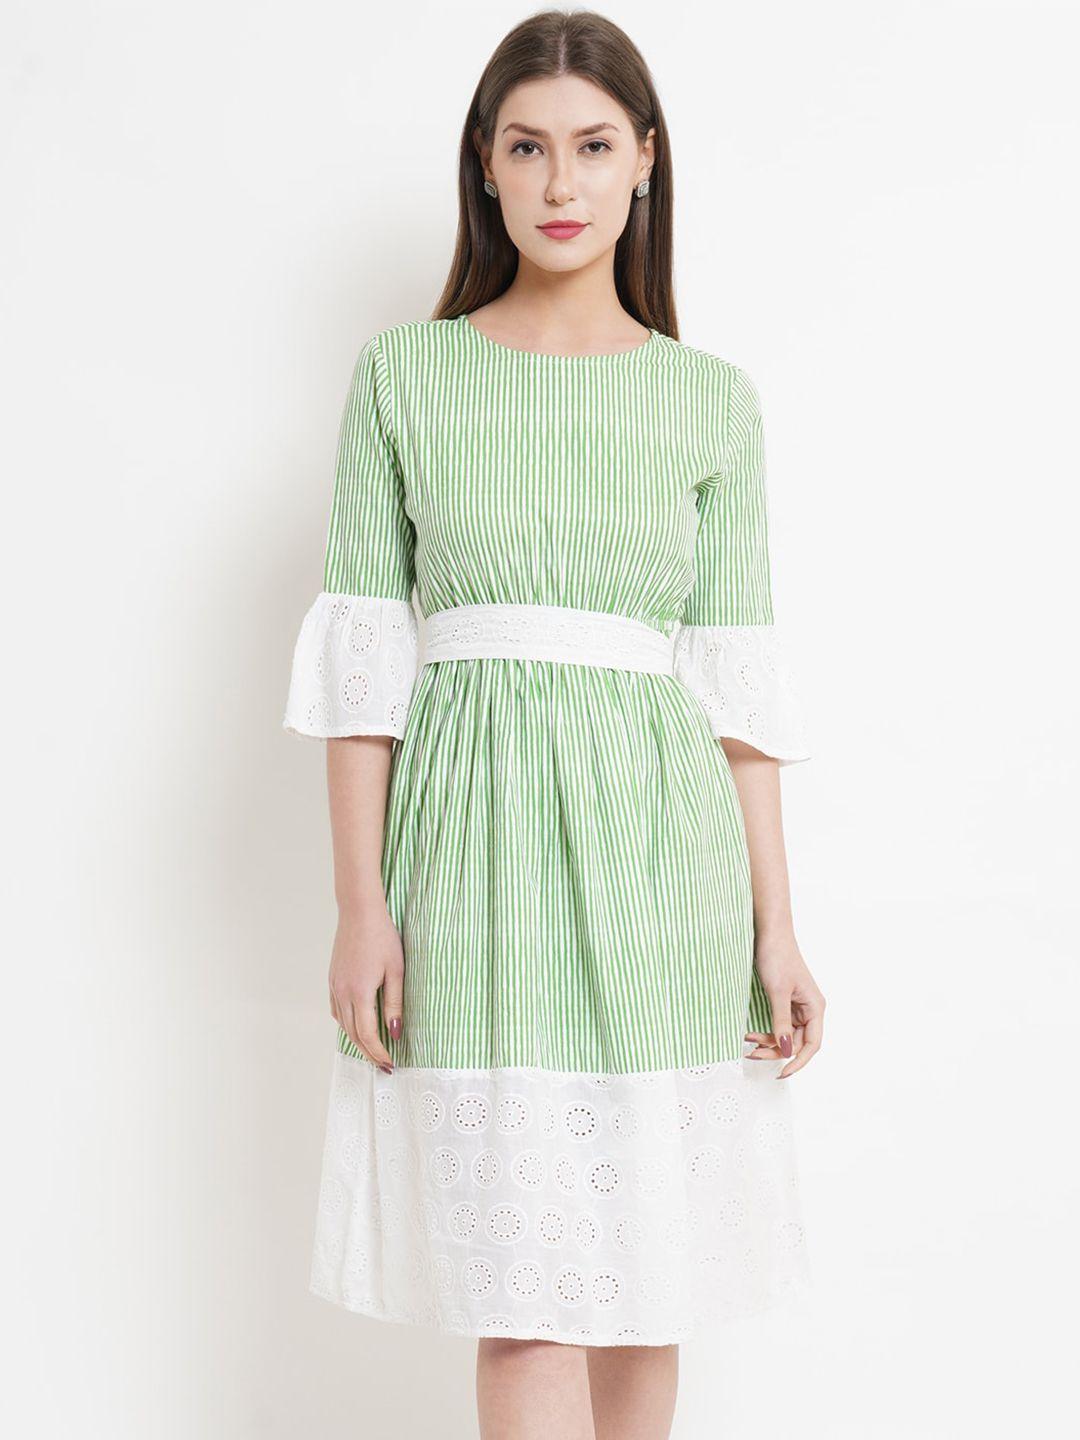 westclo green & white striped dress